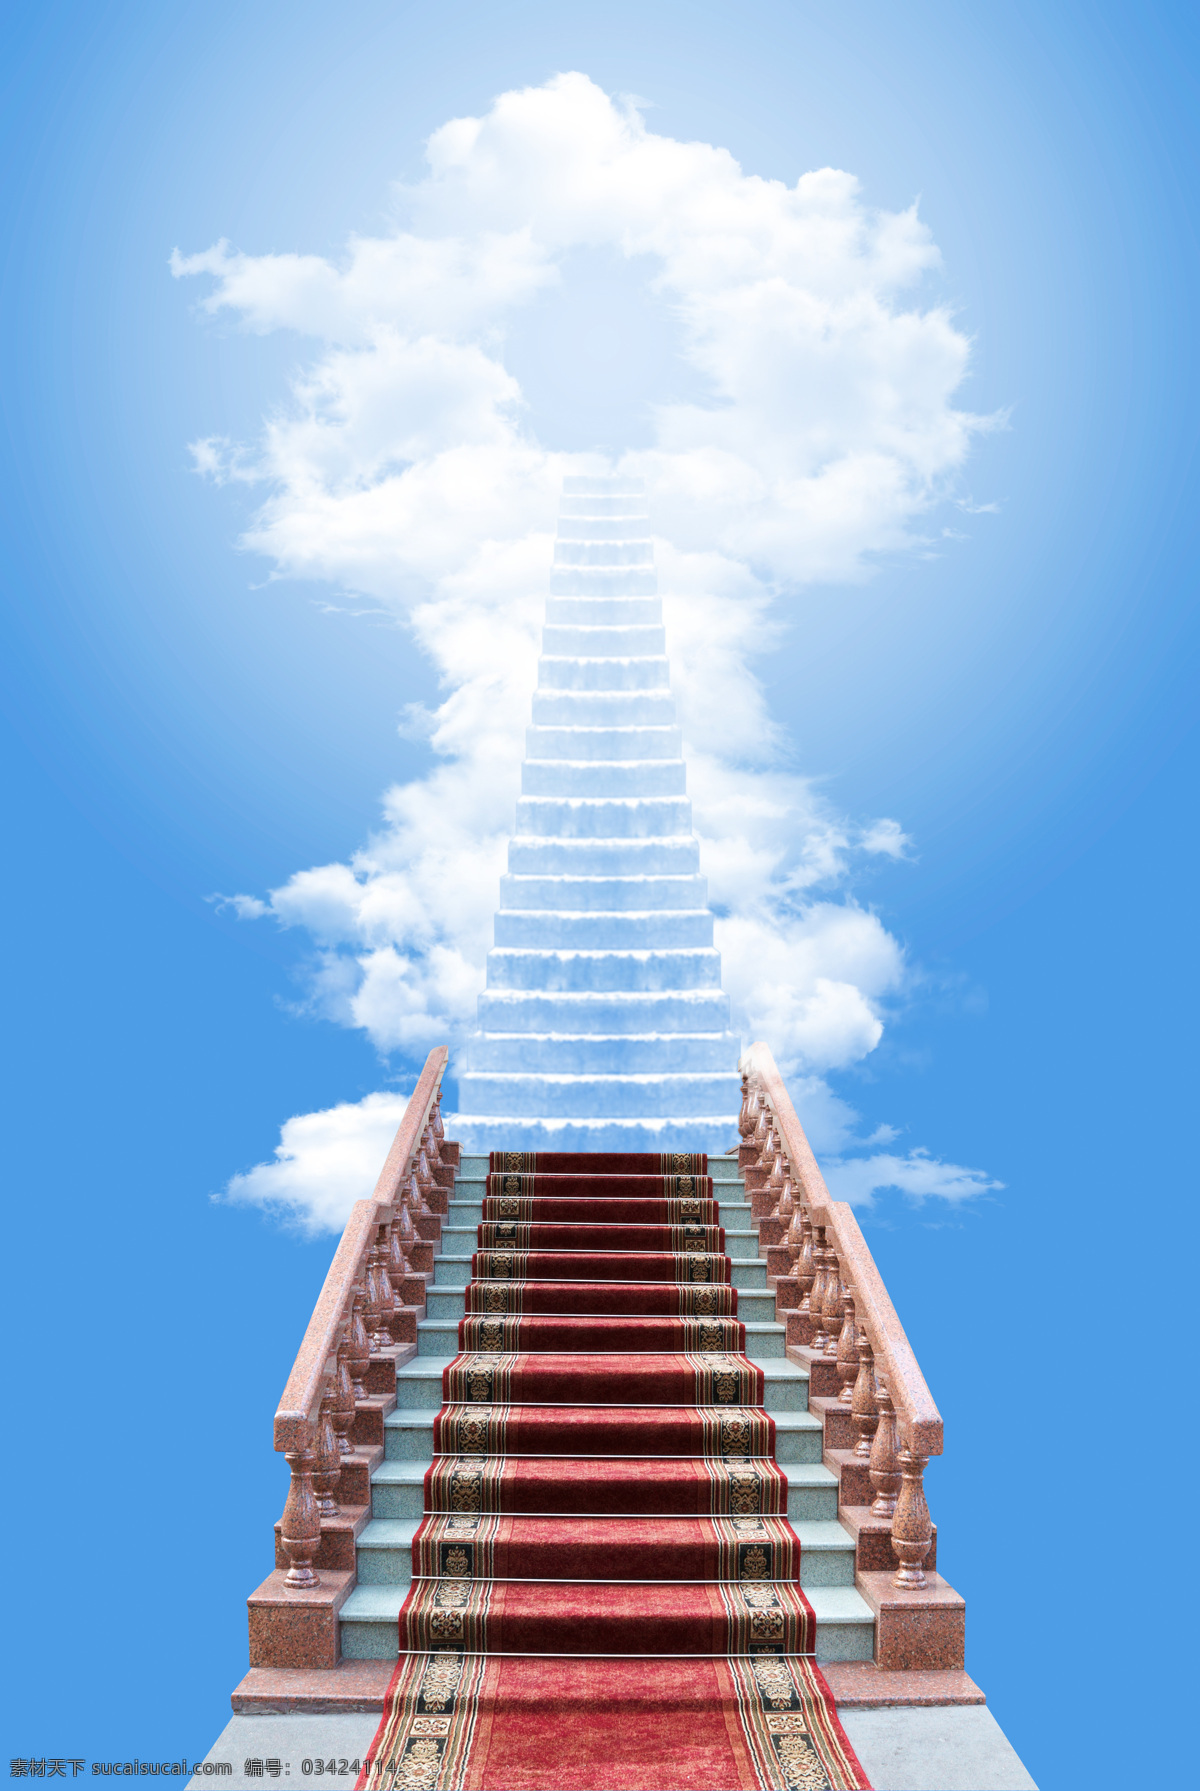 通往 天堂 阶梯 天堂之路 天国阶梯 梯子 楼梯 蓝天 通天梯 成功之路 设计素材 高清图片 天空图片 风景图片